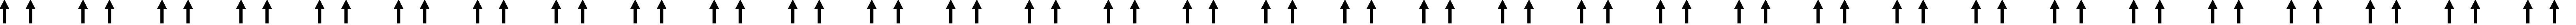 Пример написания русского алфавита шрифтом Arrows1